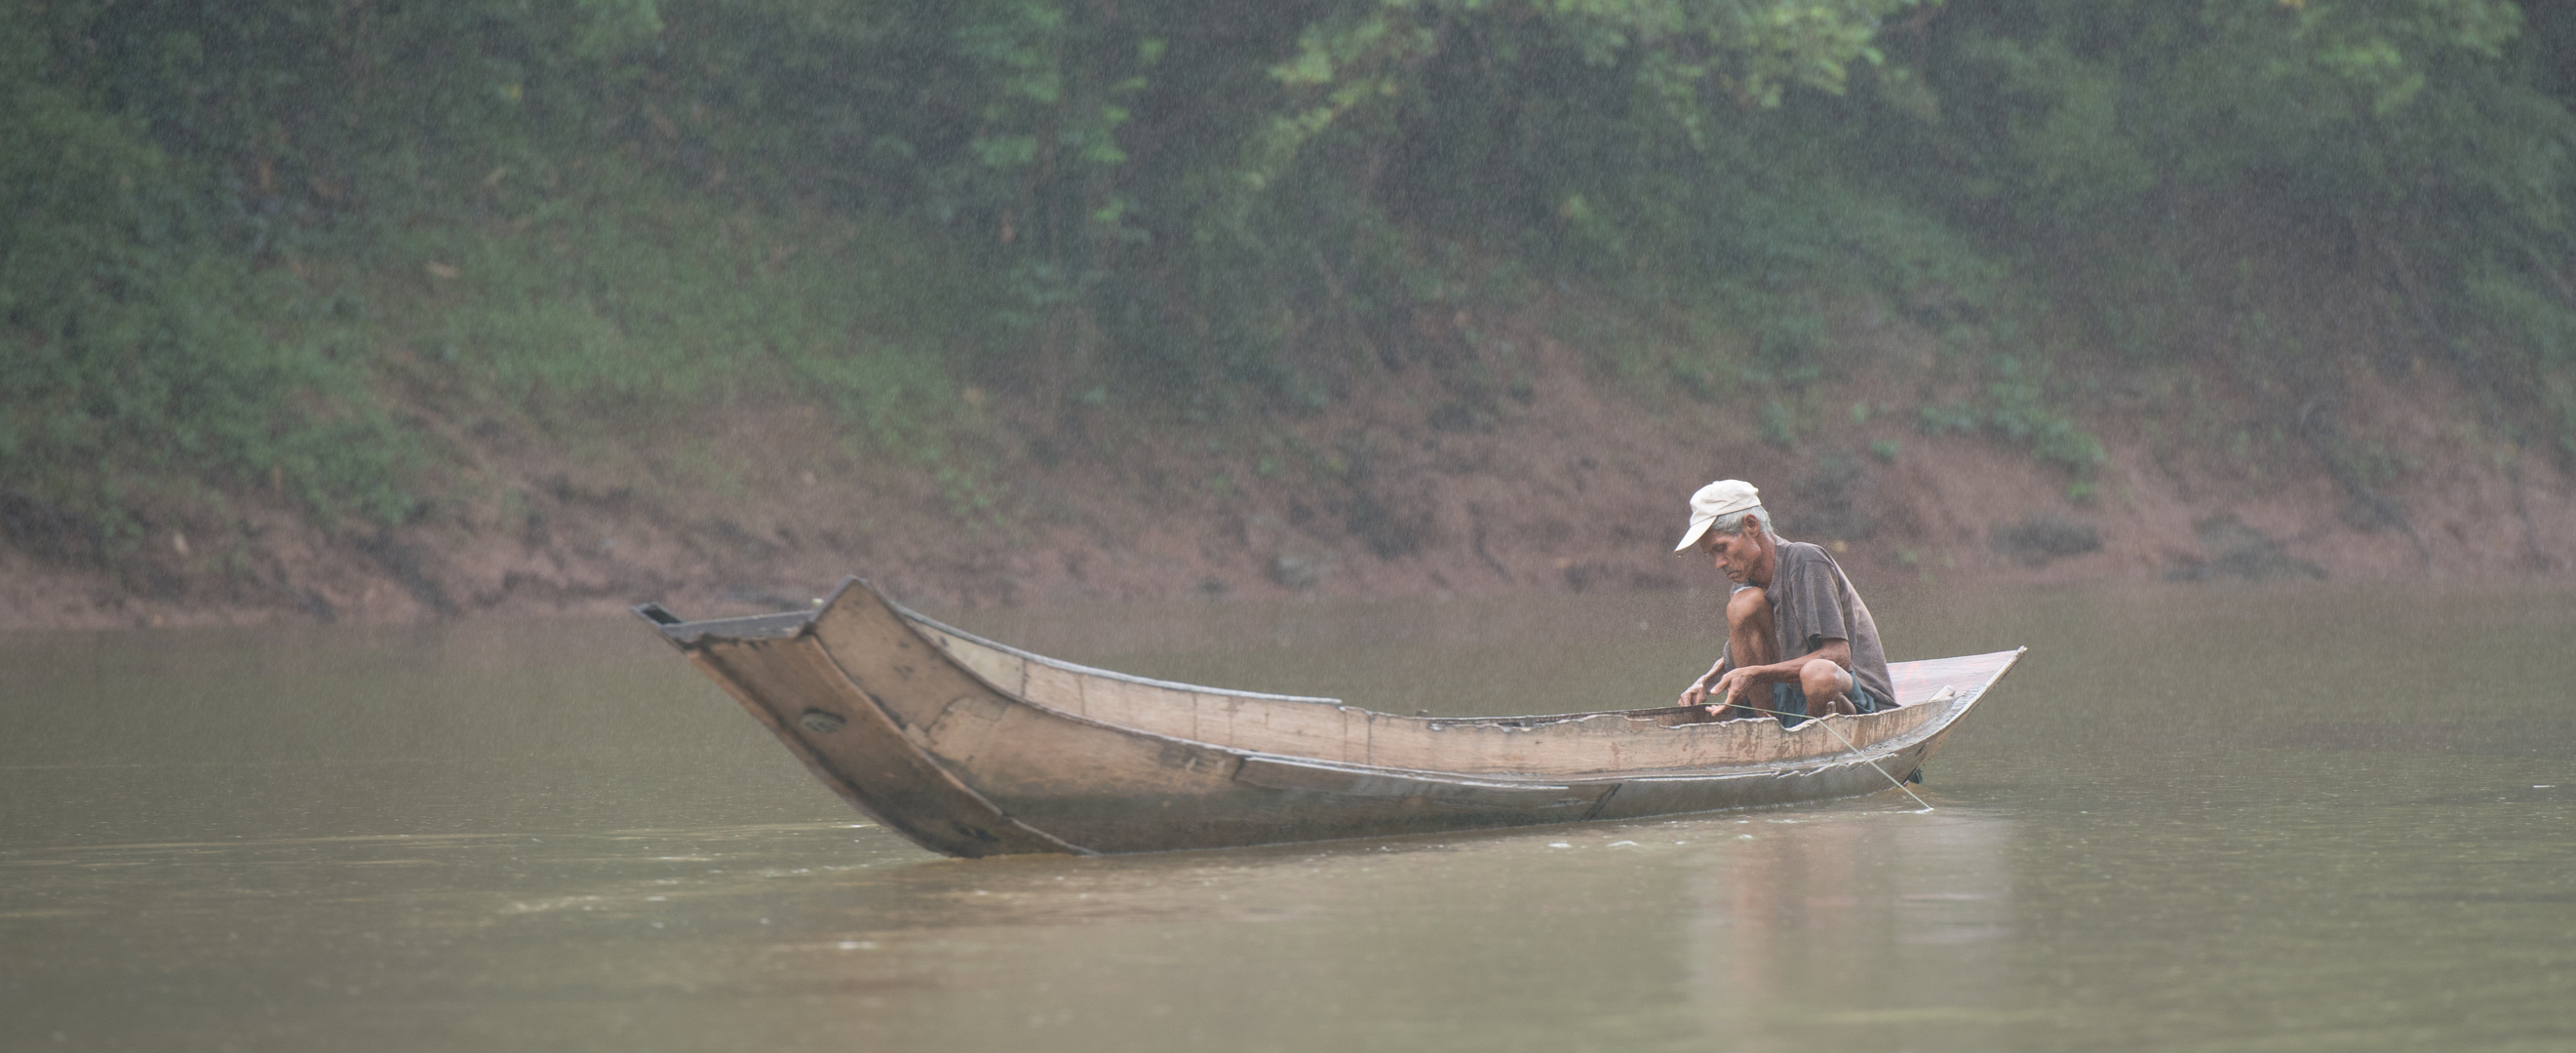 ~~ fisher's life on mekong ~~